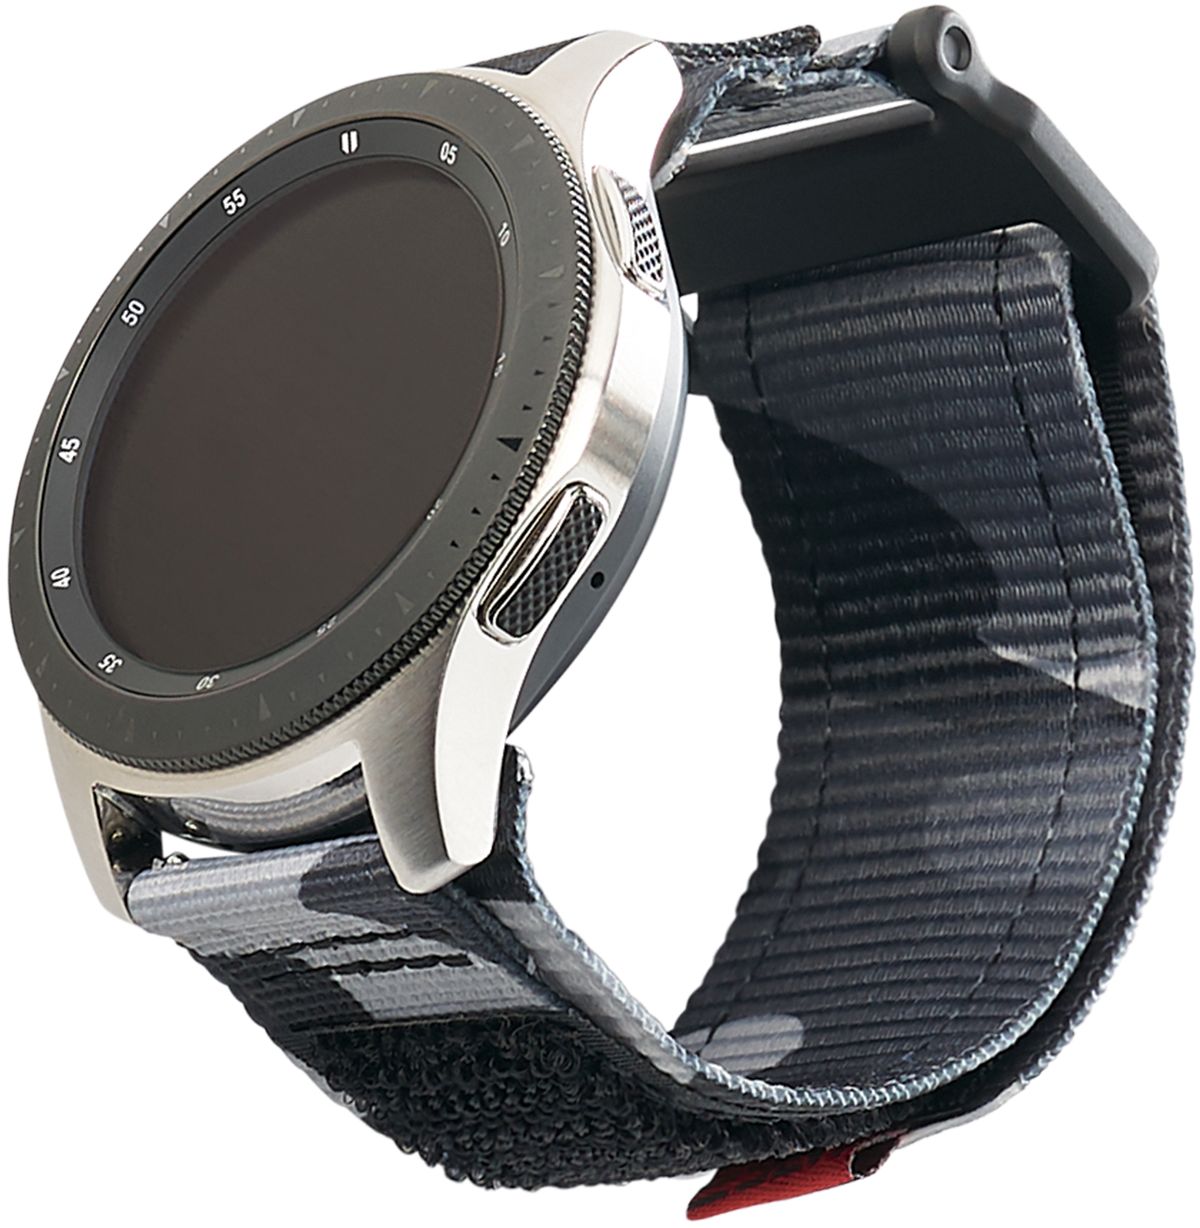 46mm galaxy watch silver